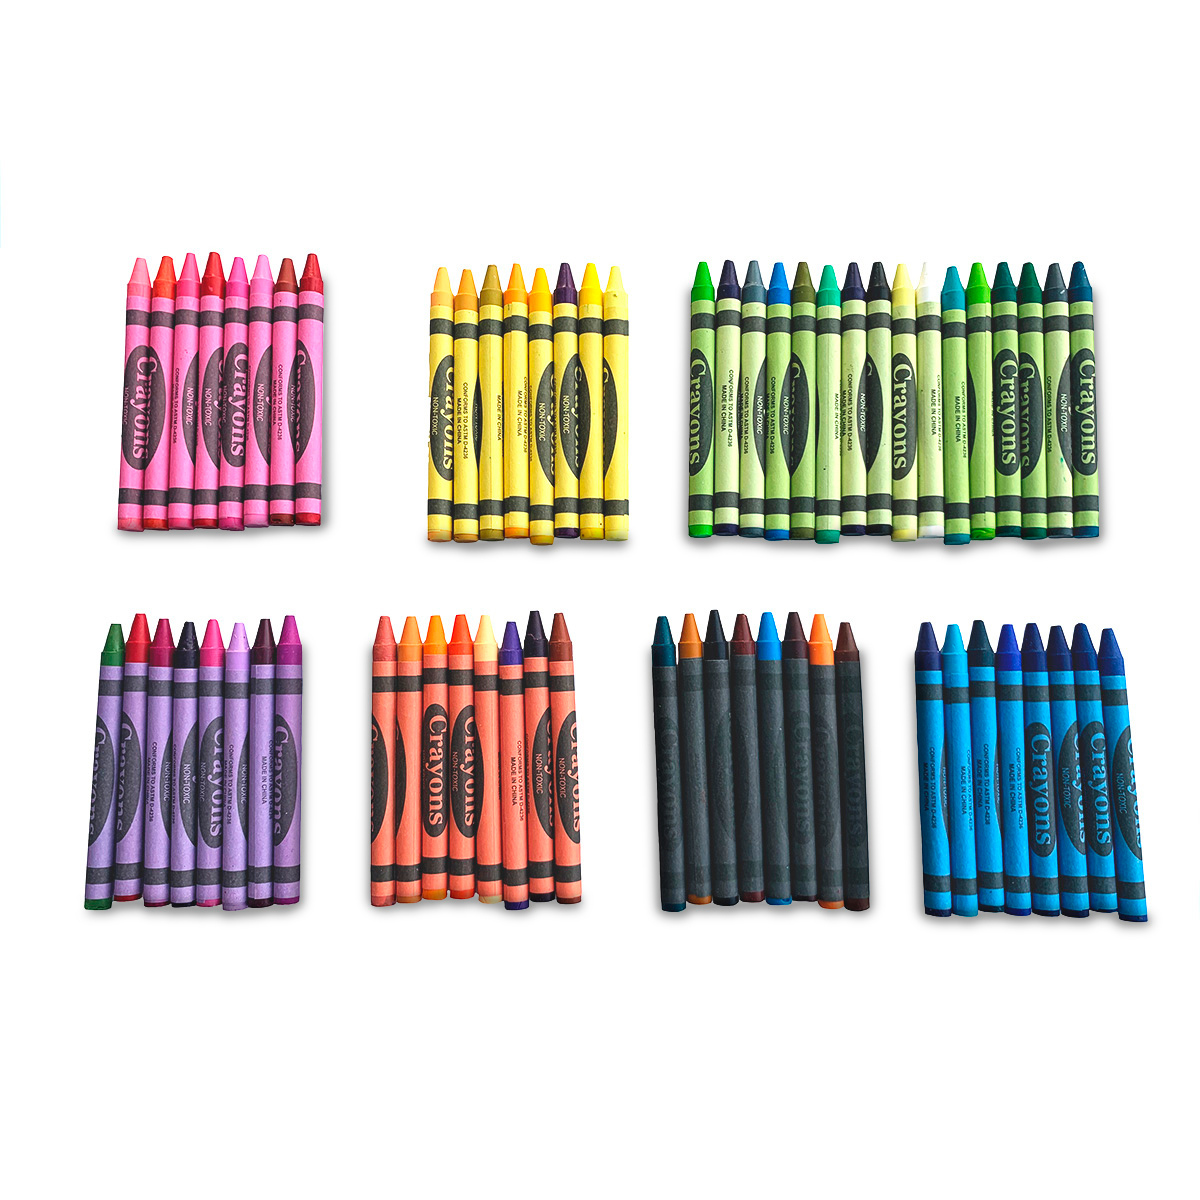 Set de Crayones con Sacapuntas Ticher Colores surtidos 64 piezas | Office  Depot Mexico